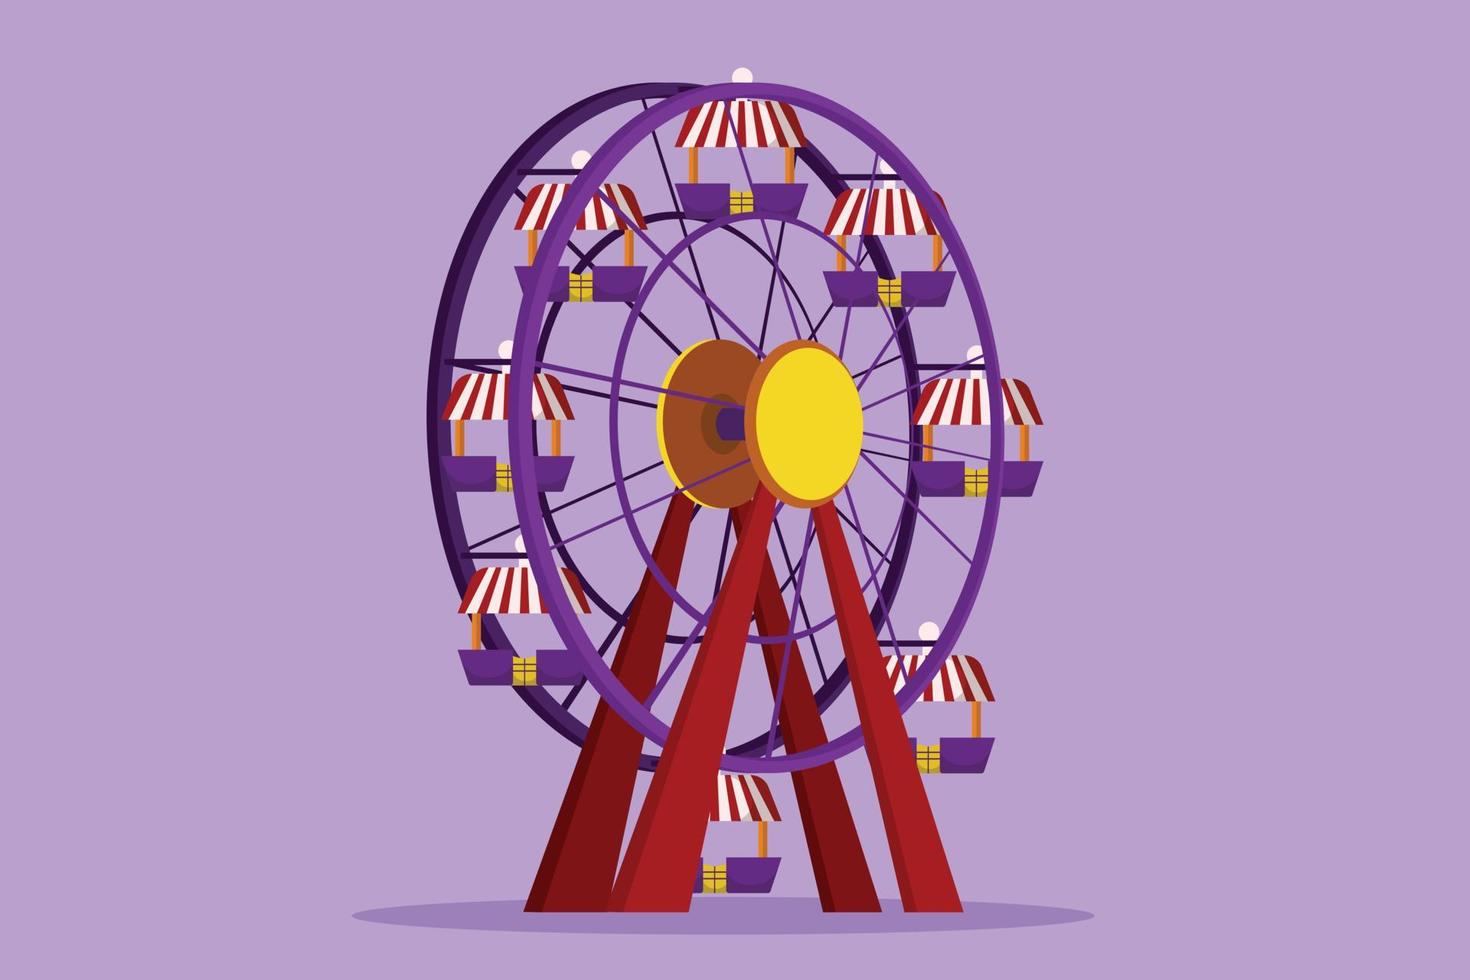 desenho animado estilo plano de roda gigante colorida em um parque de diversões, um grande círculo circular alto no céu. passeios recreativos interessantes para famílias felizes. ilustração vetorial de design gráfico vetor